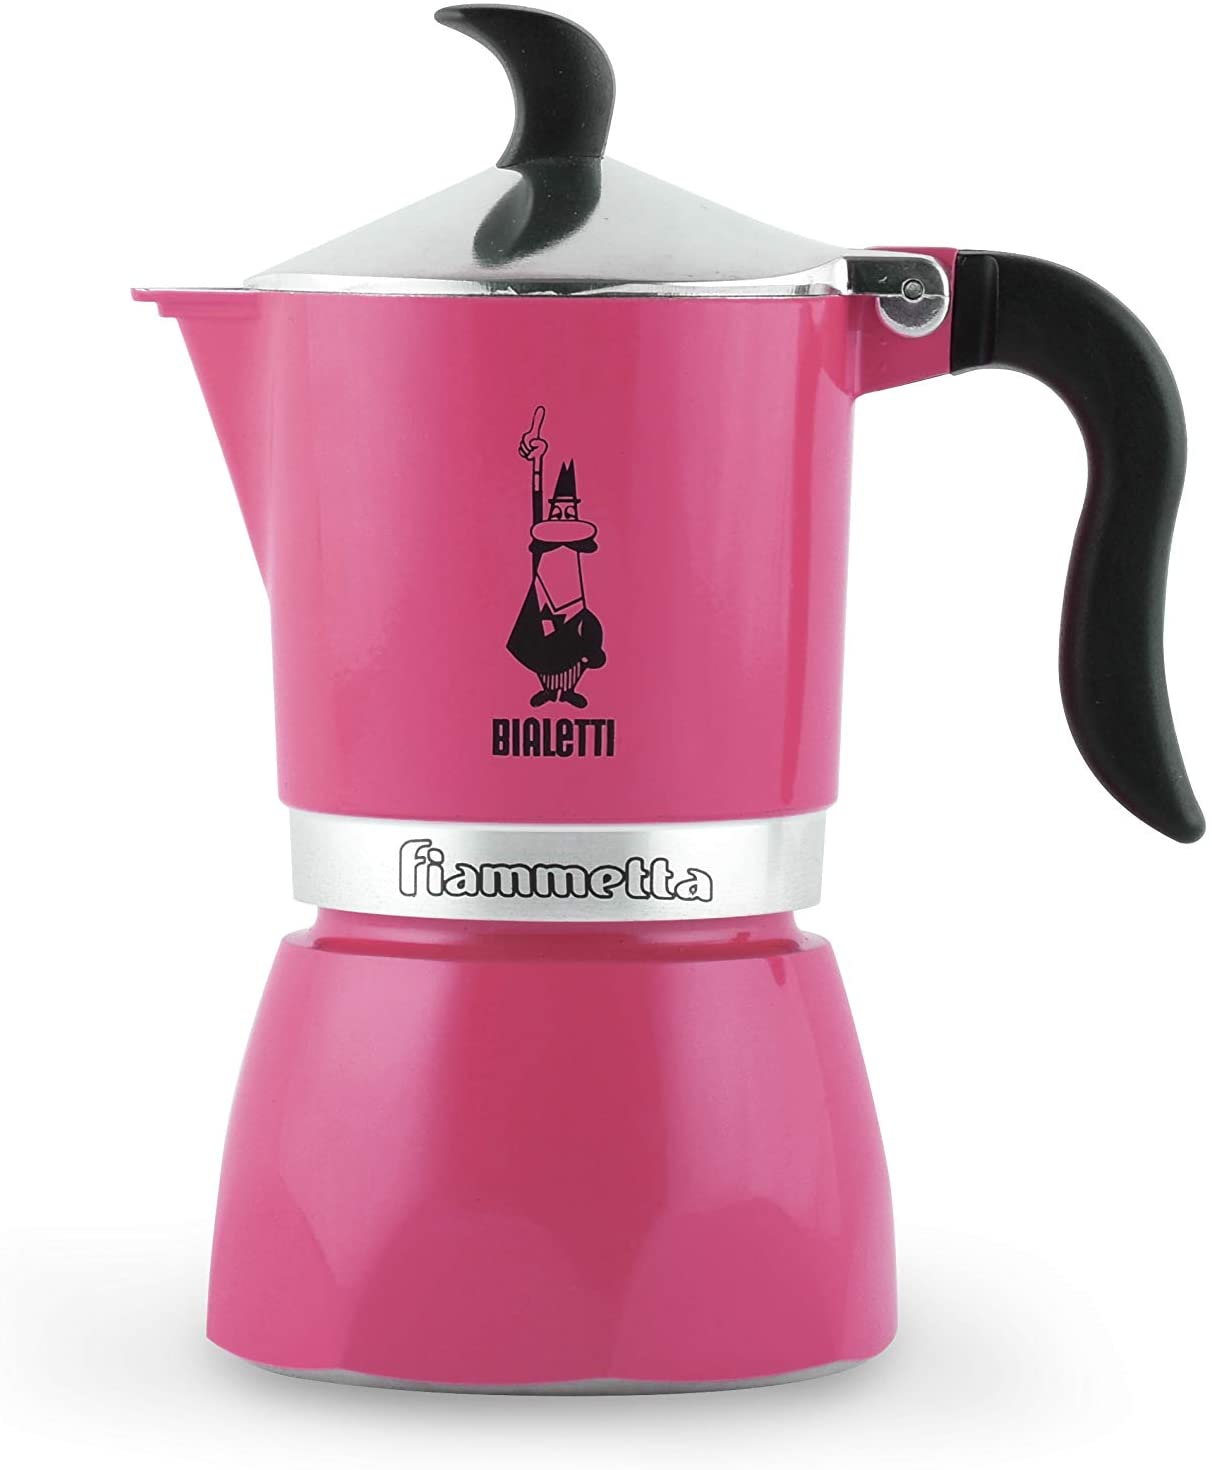 Bialetti Fiammetta 0005351 Espresso Maker for 1 Cup in Fuchsia Aluminium 30 x 20 x 15 cm